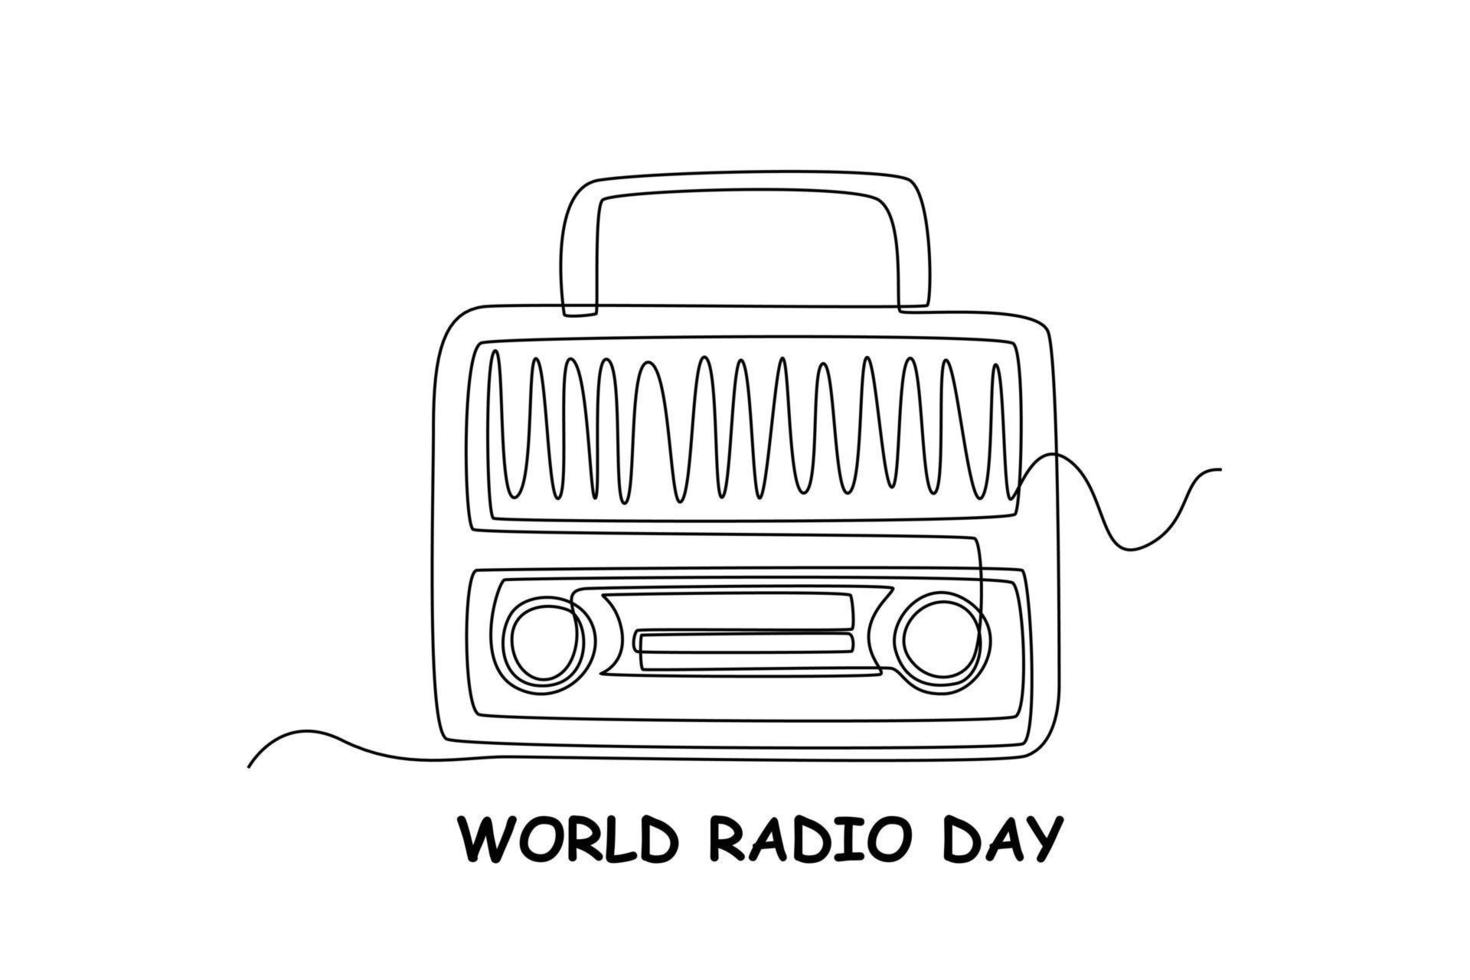 single een lijn tekening retro stijl radio. wereld radio dag concept. doorlopend lijn trek ontwerp grafisch vector illustratie.